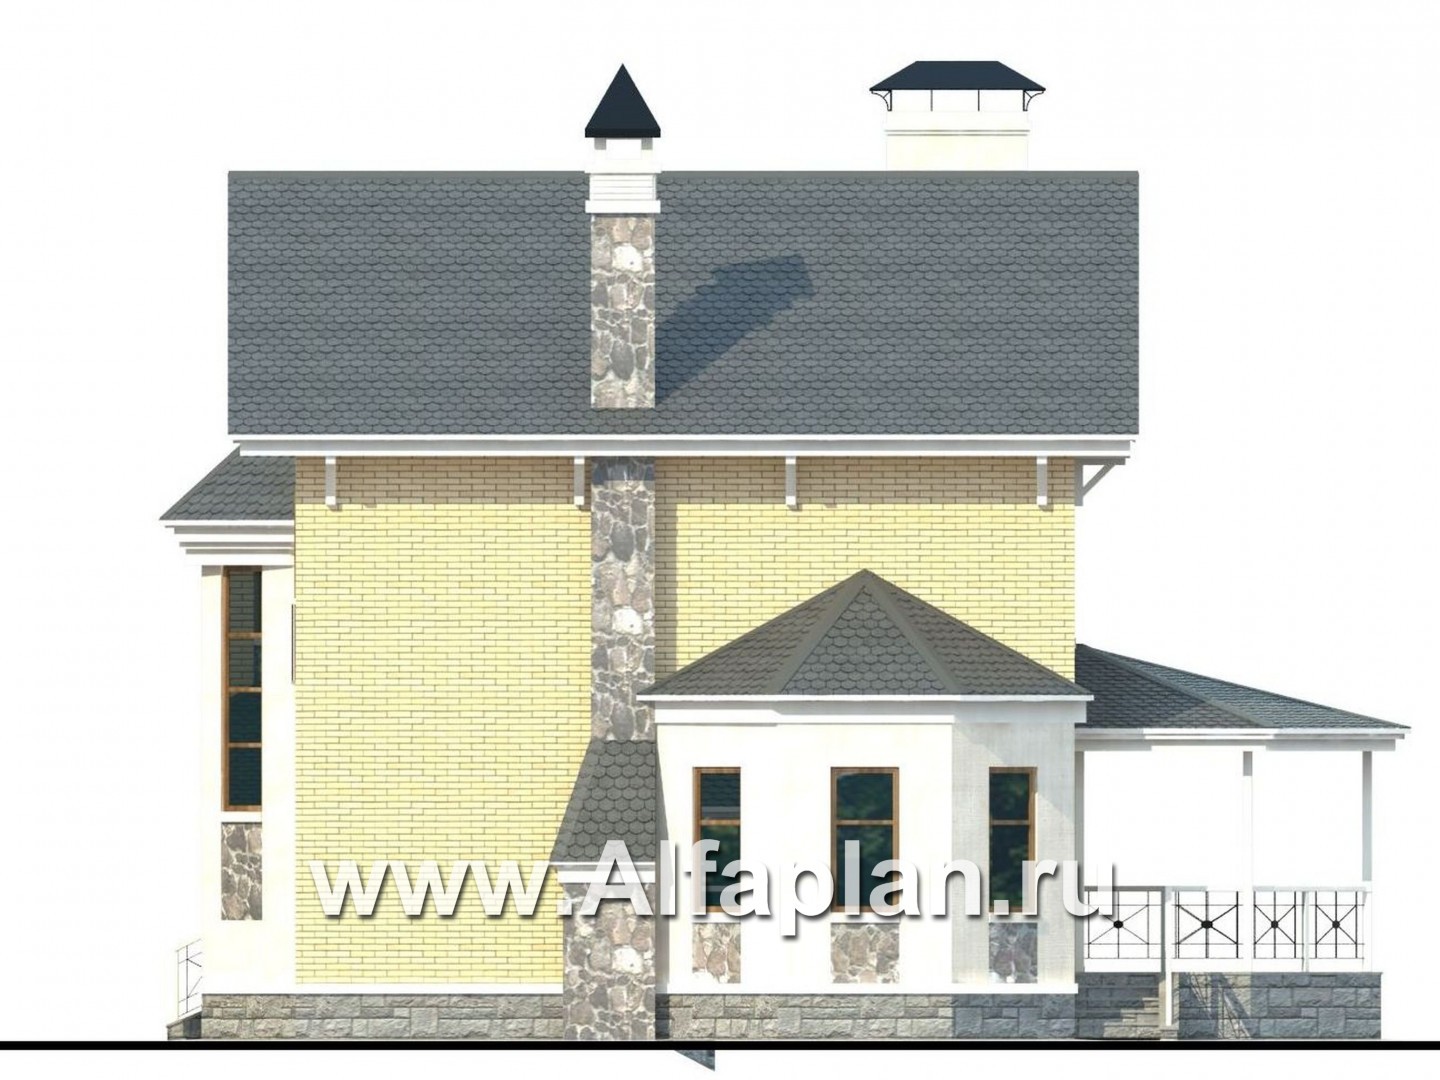 «Лидер» - проект двухэтажного дома, с эркером и с террасой, с навесом для авто - фасад дома